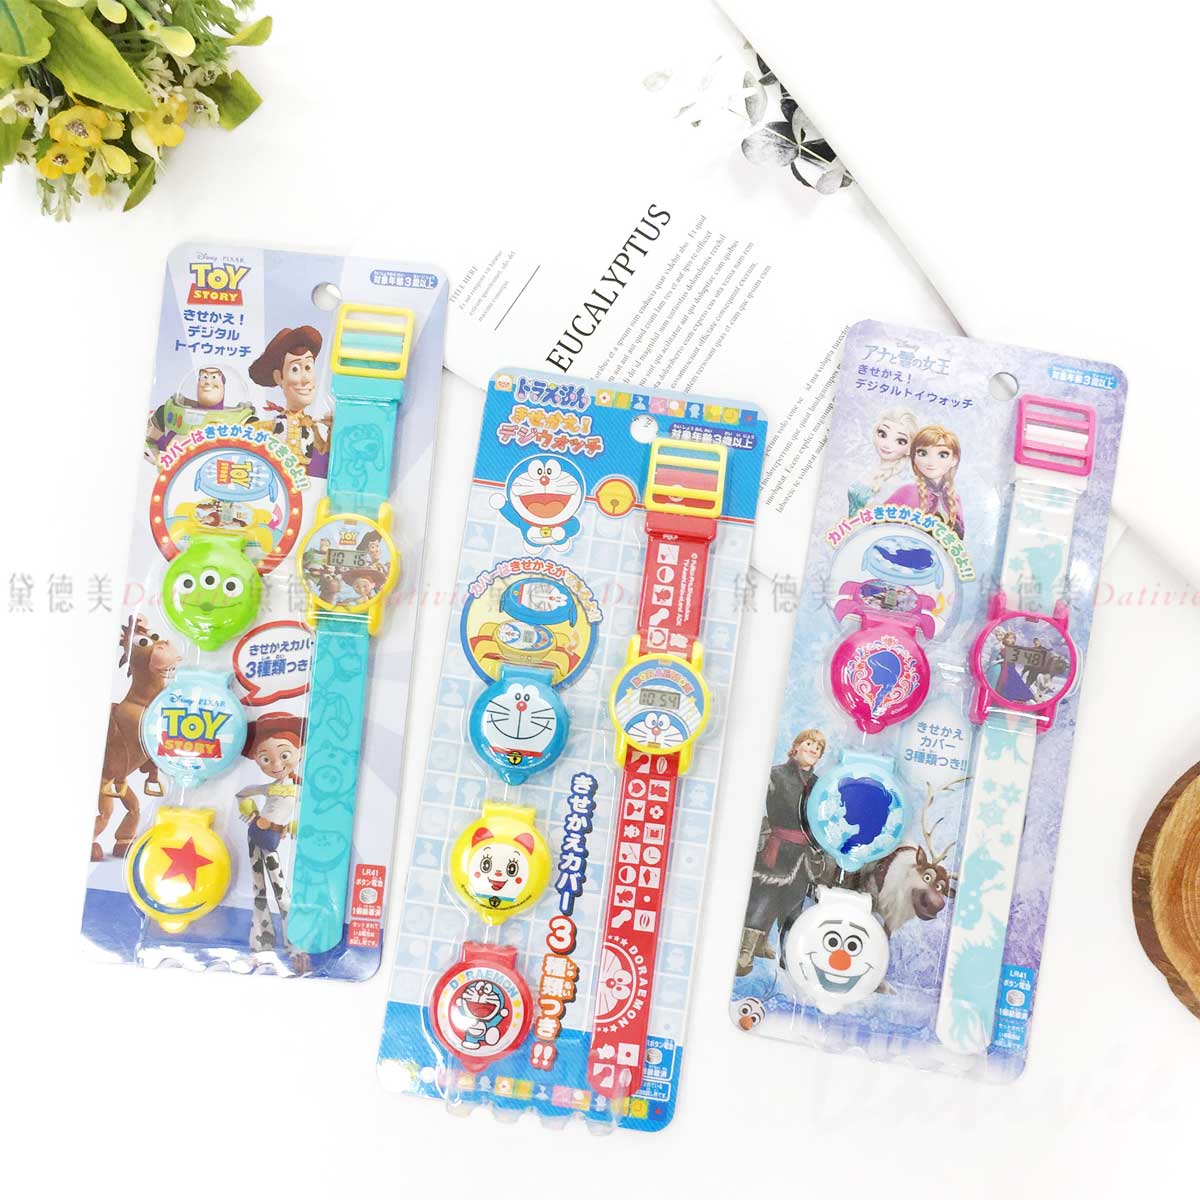 兒童電子手錶-哆啦A夢 玩具總動員 冰雪奇緣 迪士尼 尾上萬 日本正版授權